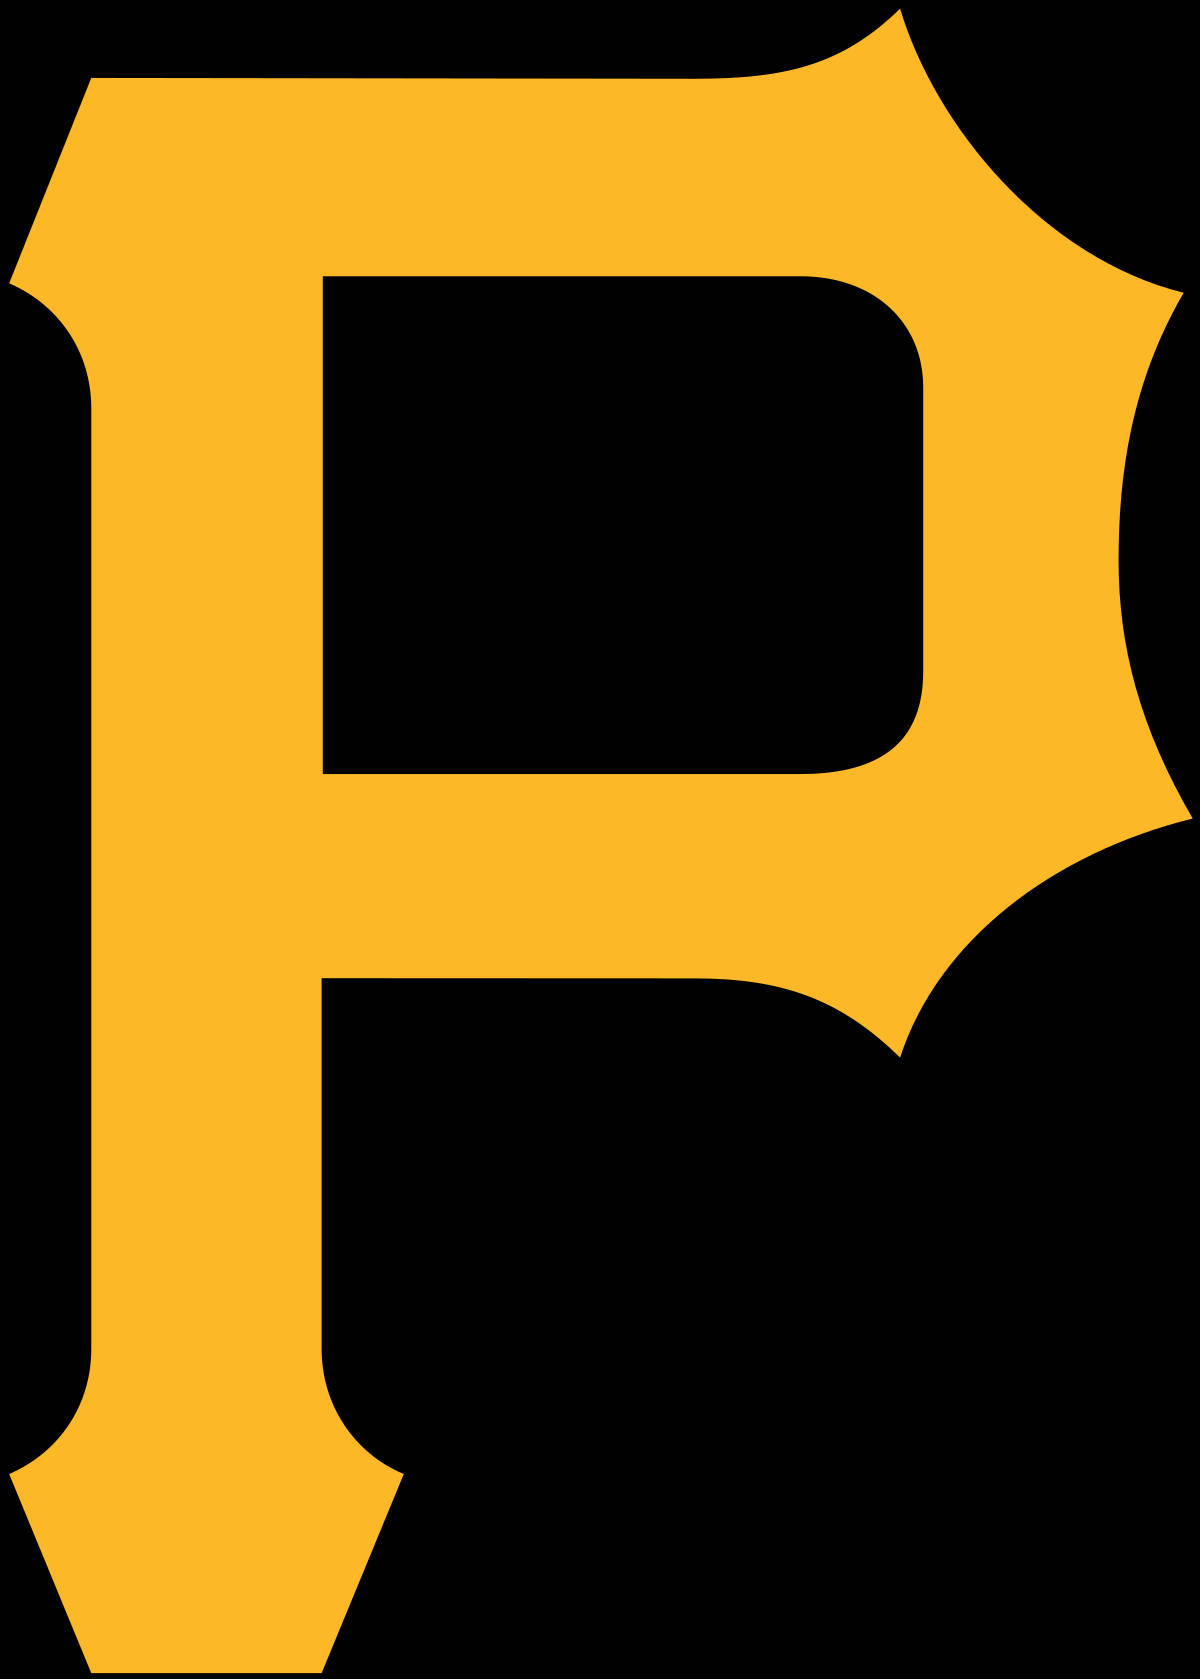 Pittsburgh Pirates Trademark Logo Wallpaper